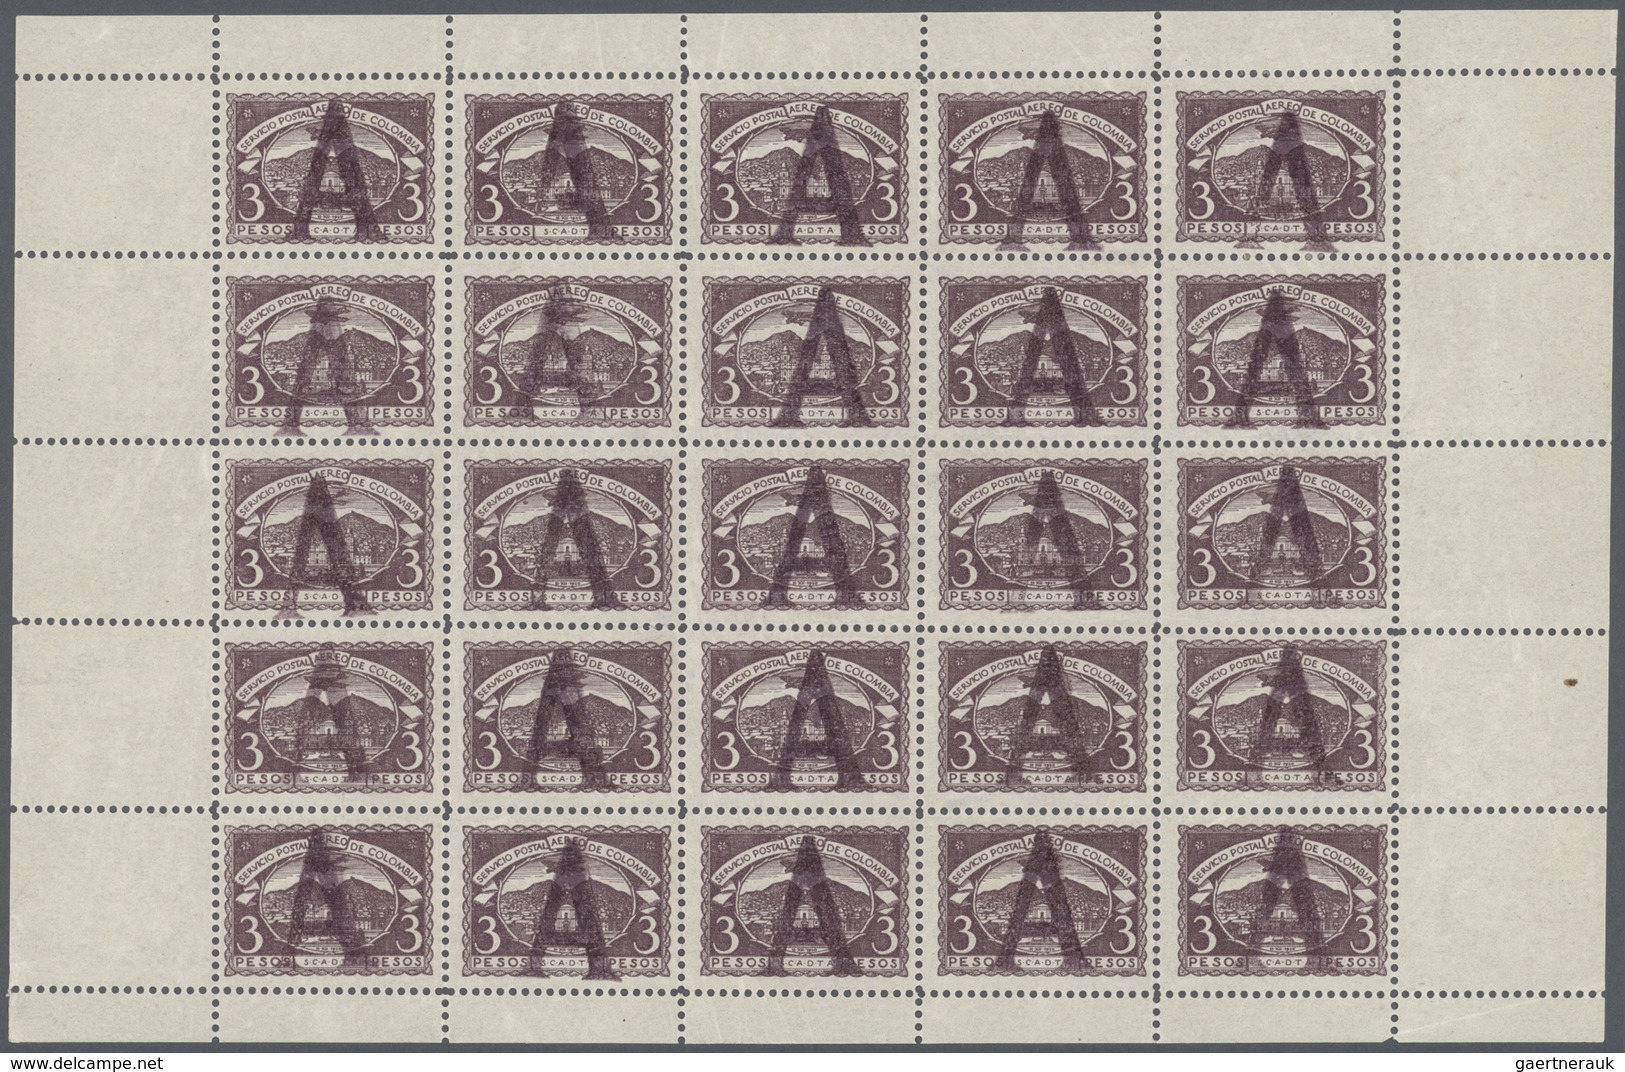 SCADTA - Länder-Aufdrucke: 1923, "A" Handstamp On 1921 3p In Pane Of 25 (2010 Mi # 10, €5000 ++), NH - Flugzeuge